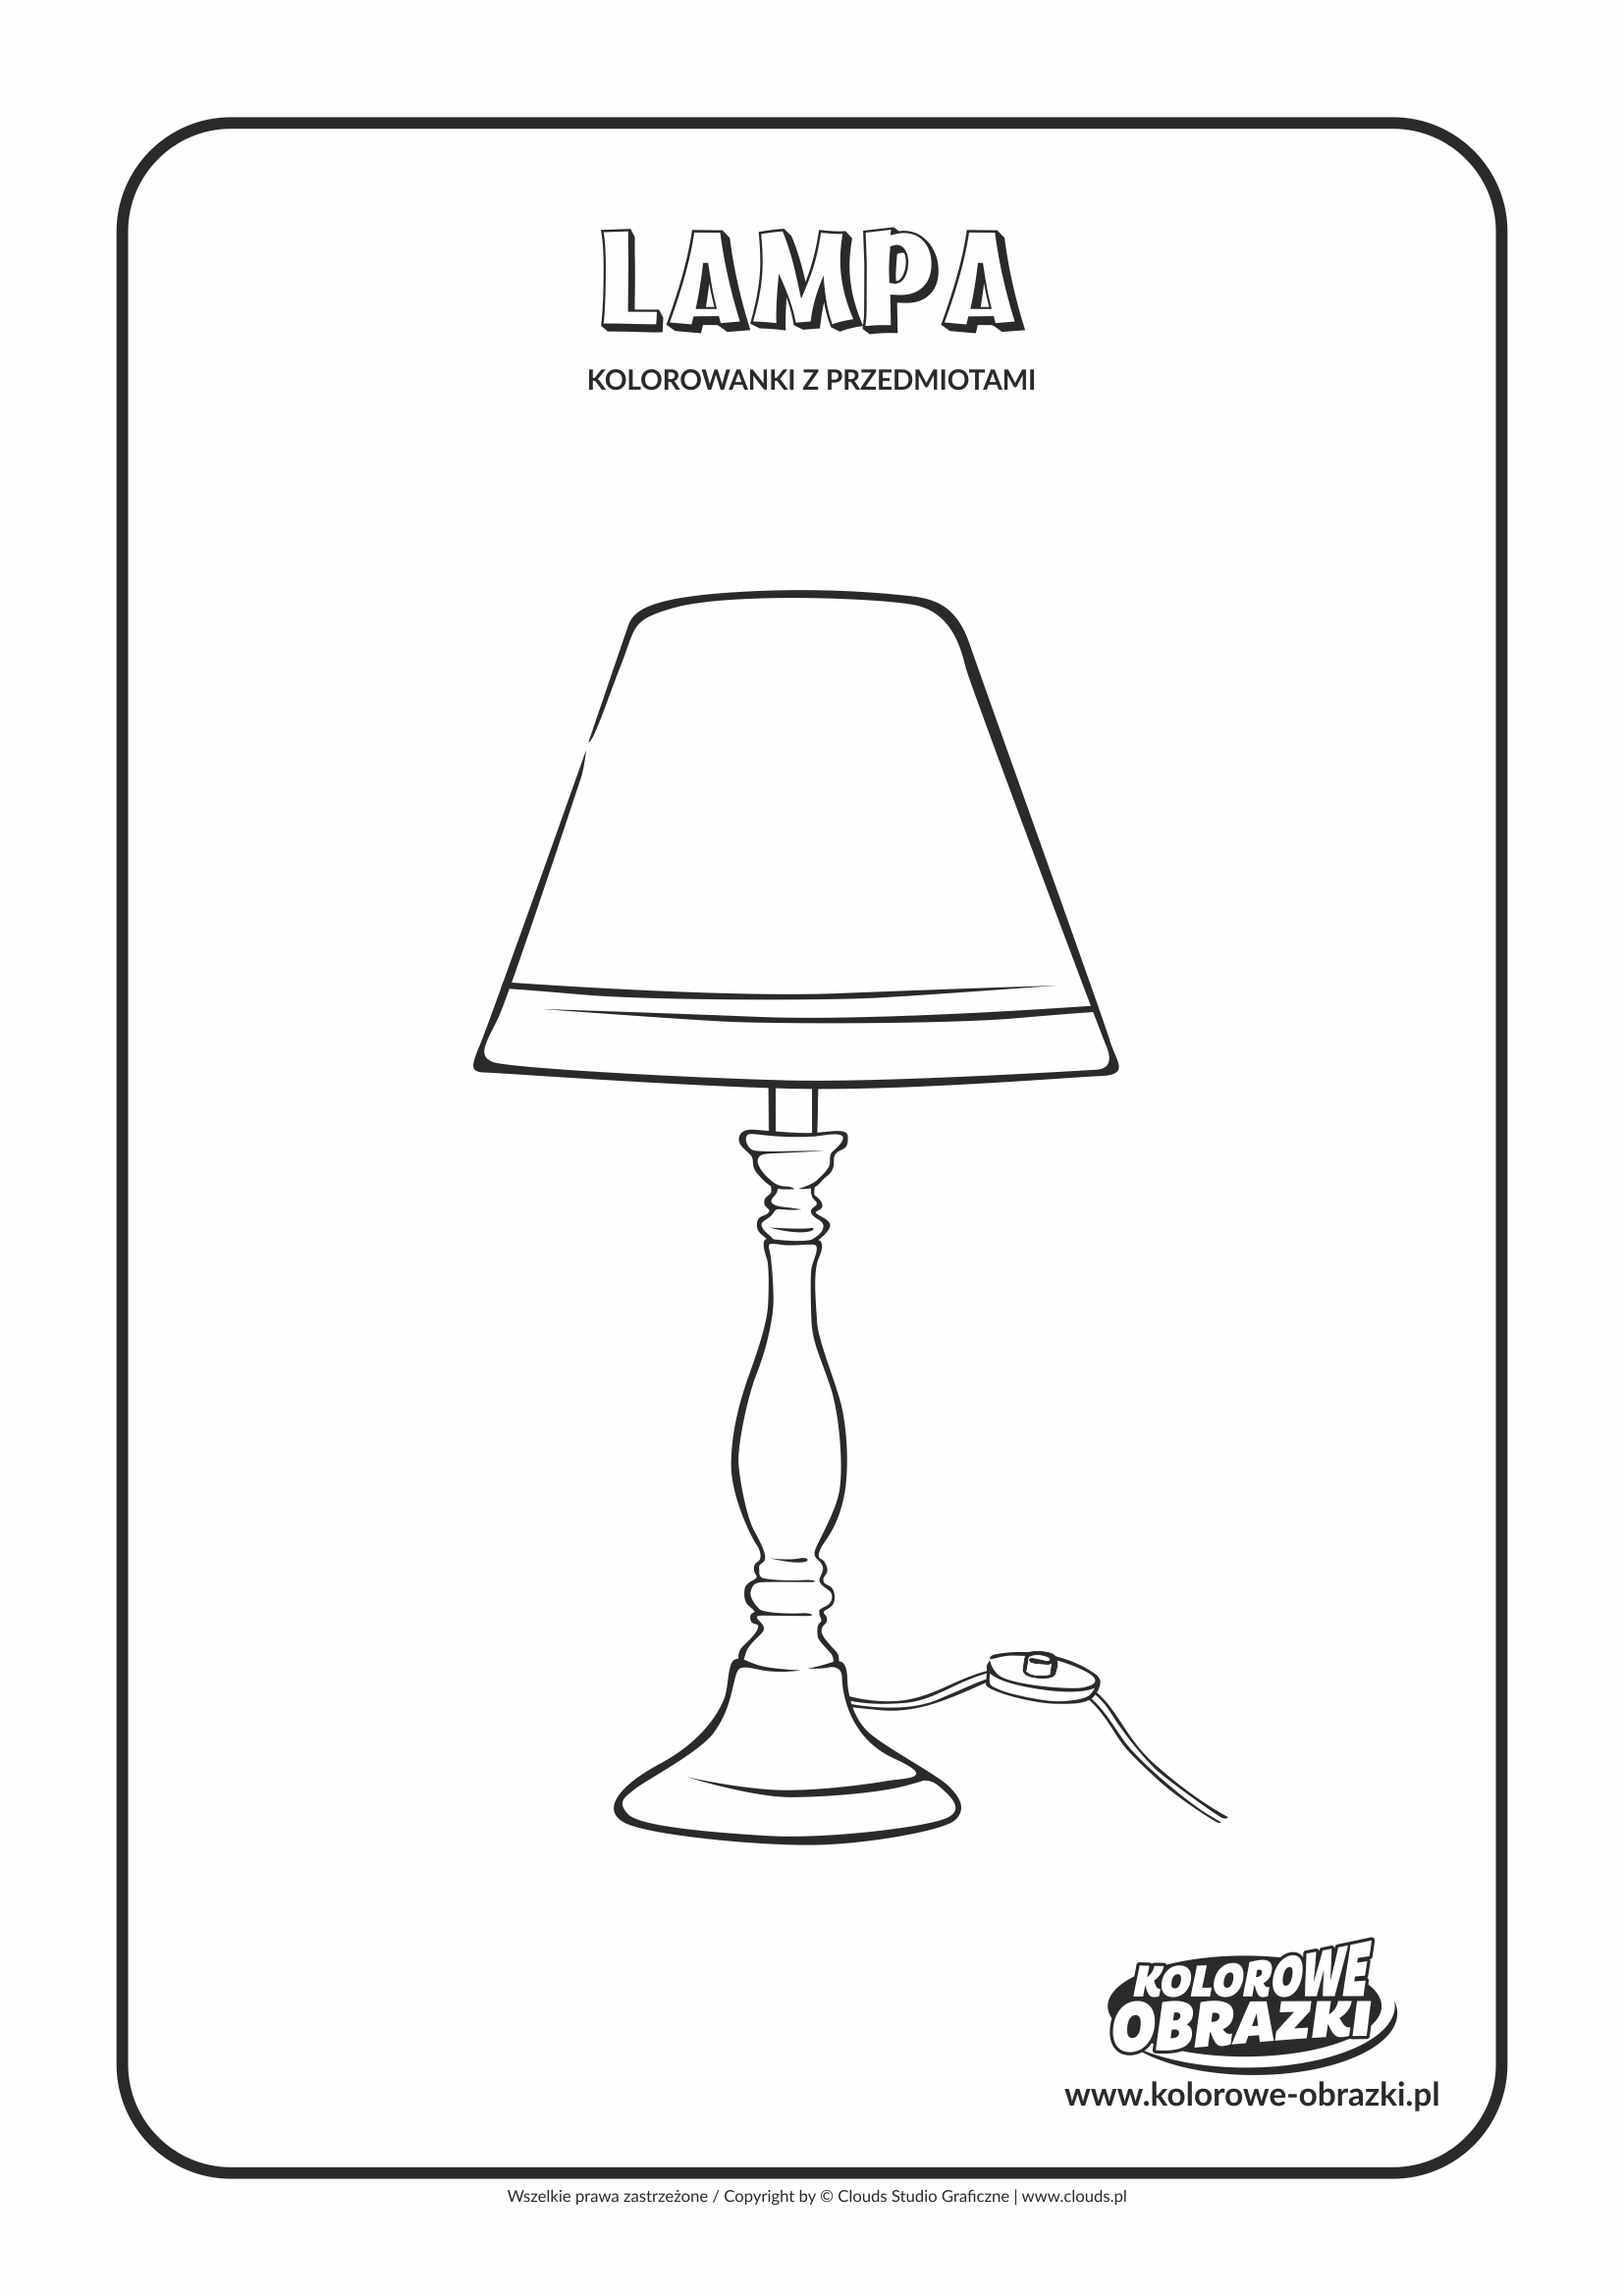 Kolorowanki dla dzieci - Przedmioty / Lampa. Kolorowanka z lampą